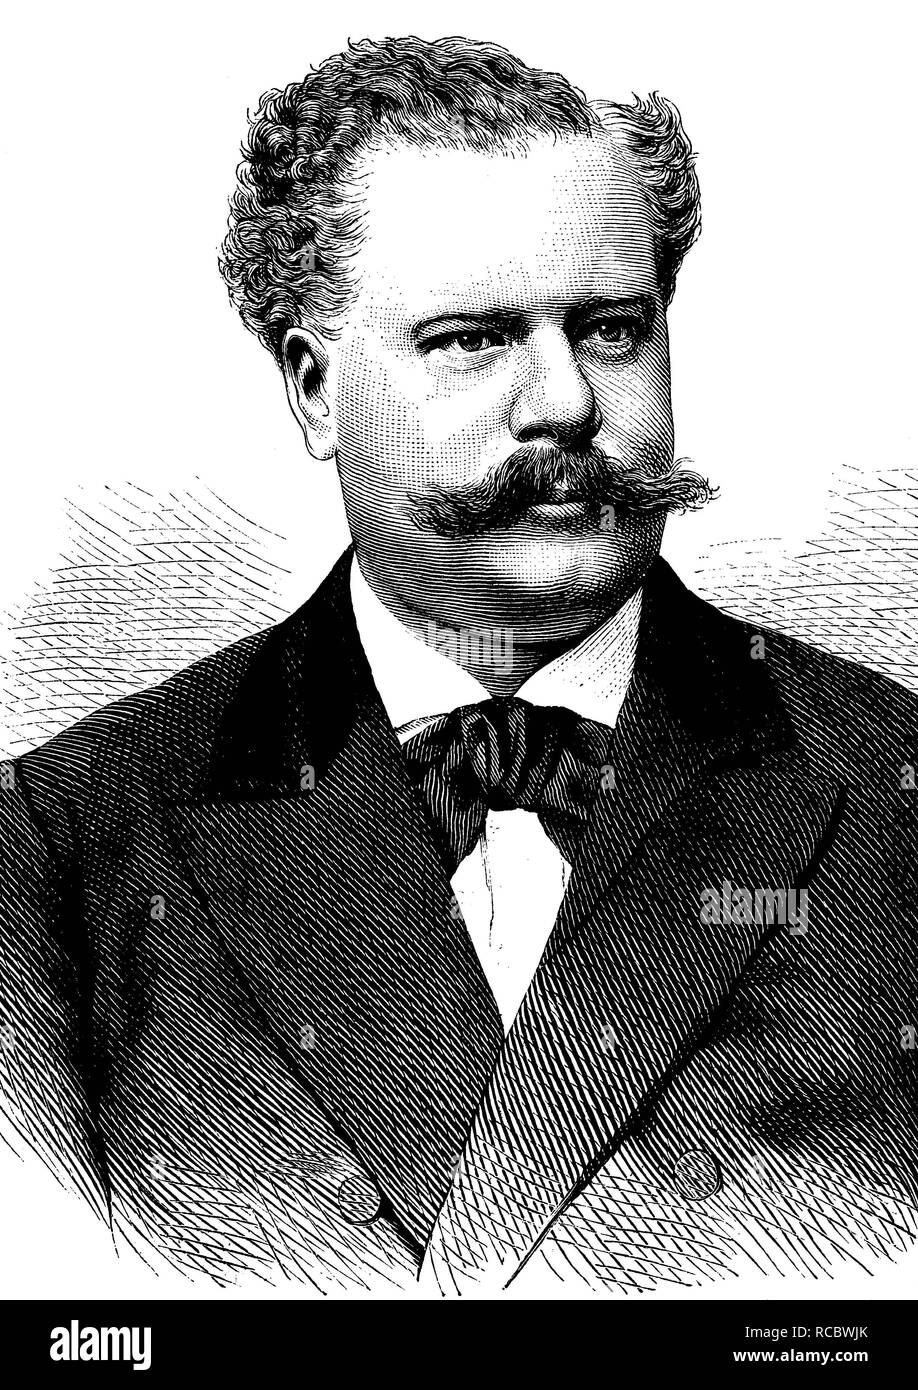 Emil Scaria, 1838 - 1886, chanteur de la Dresdner Hofoper, opéra gravure historique, vers 1889 Banque D'Images